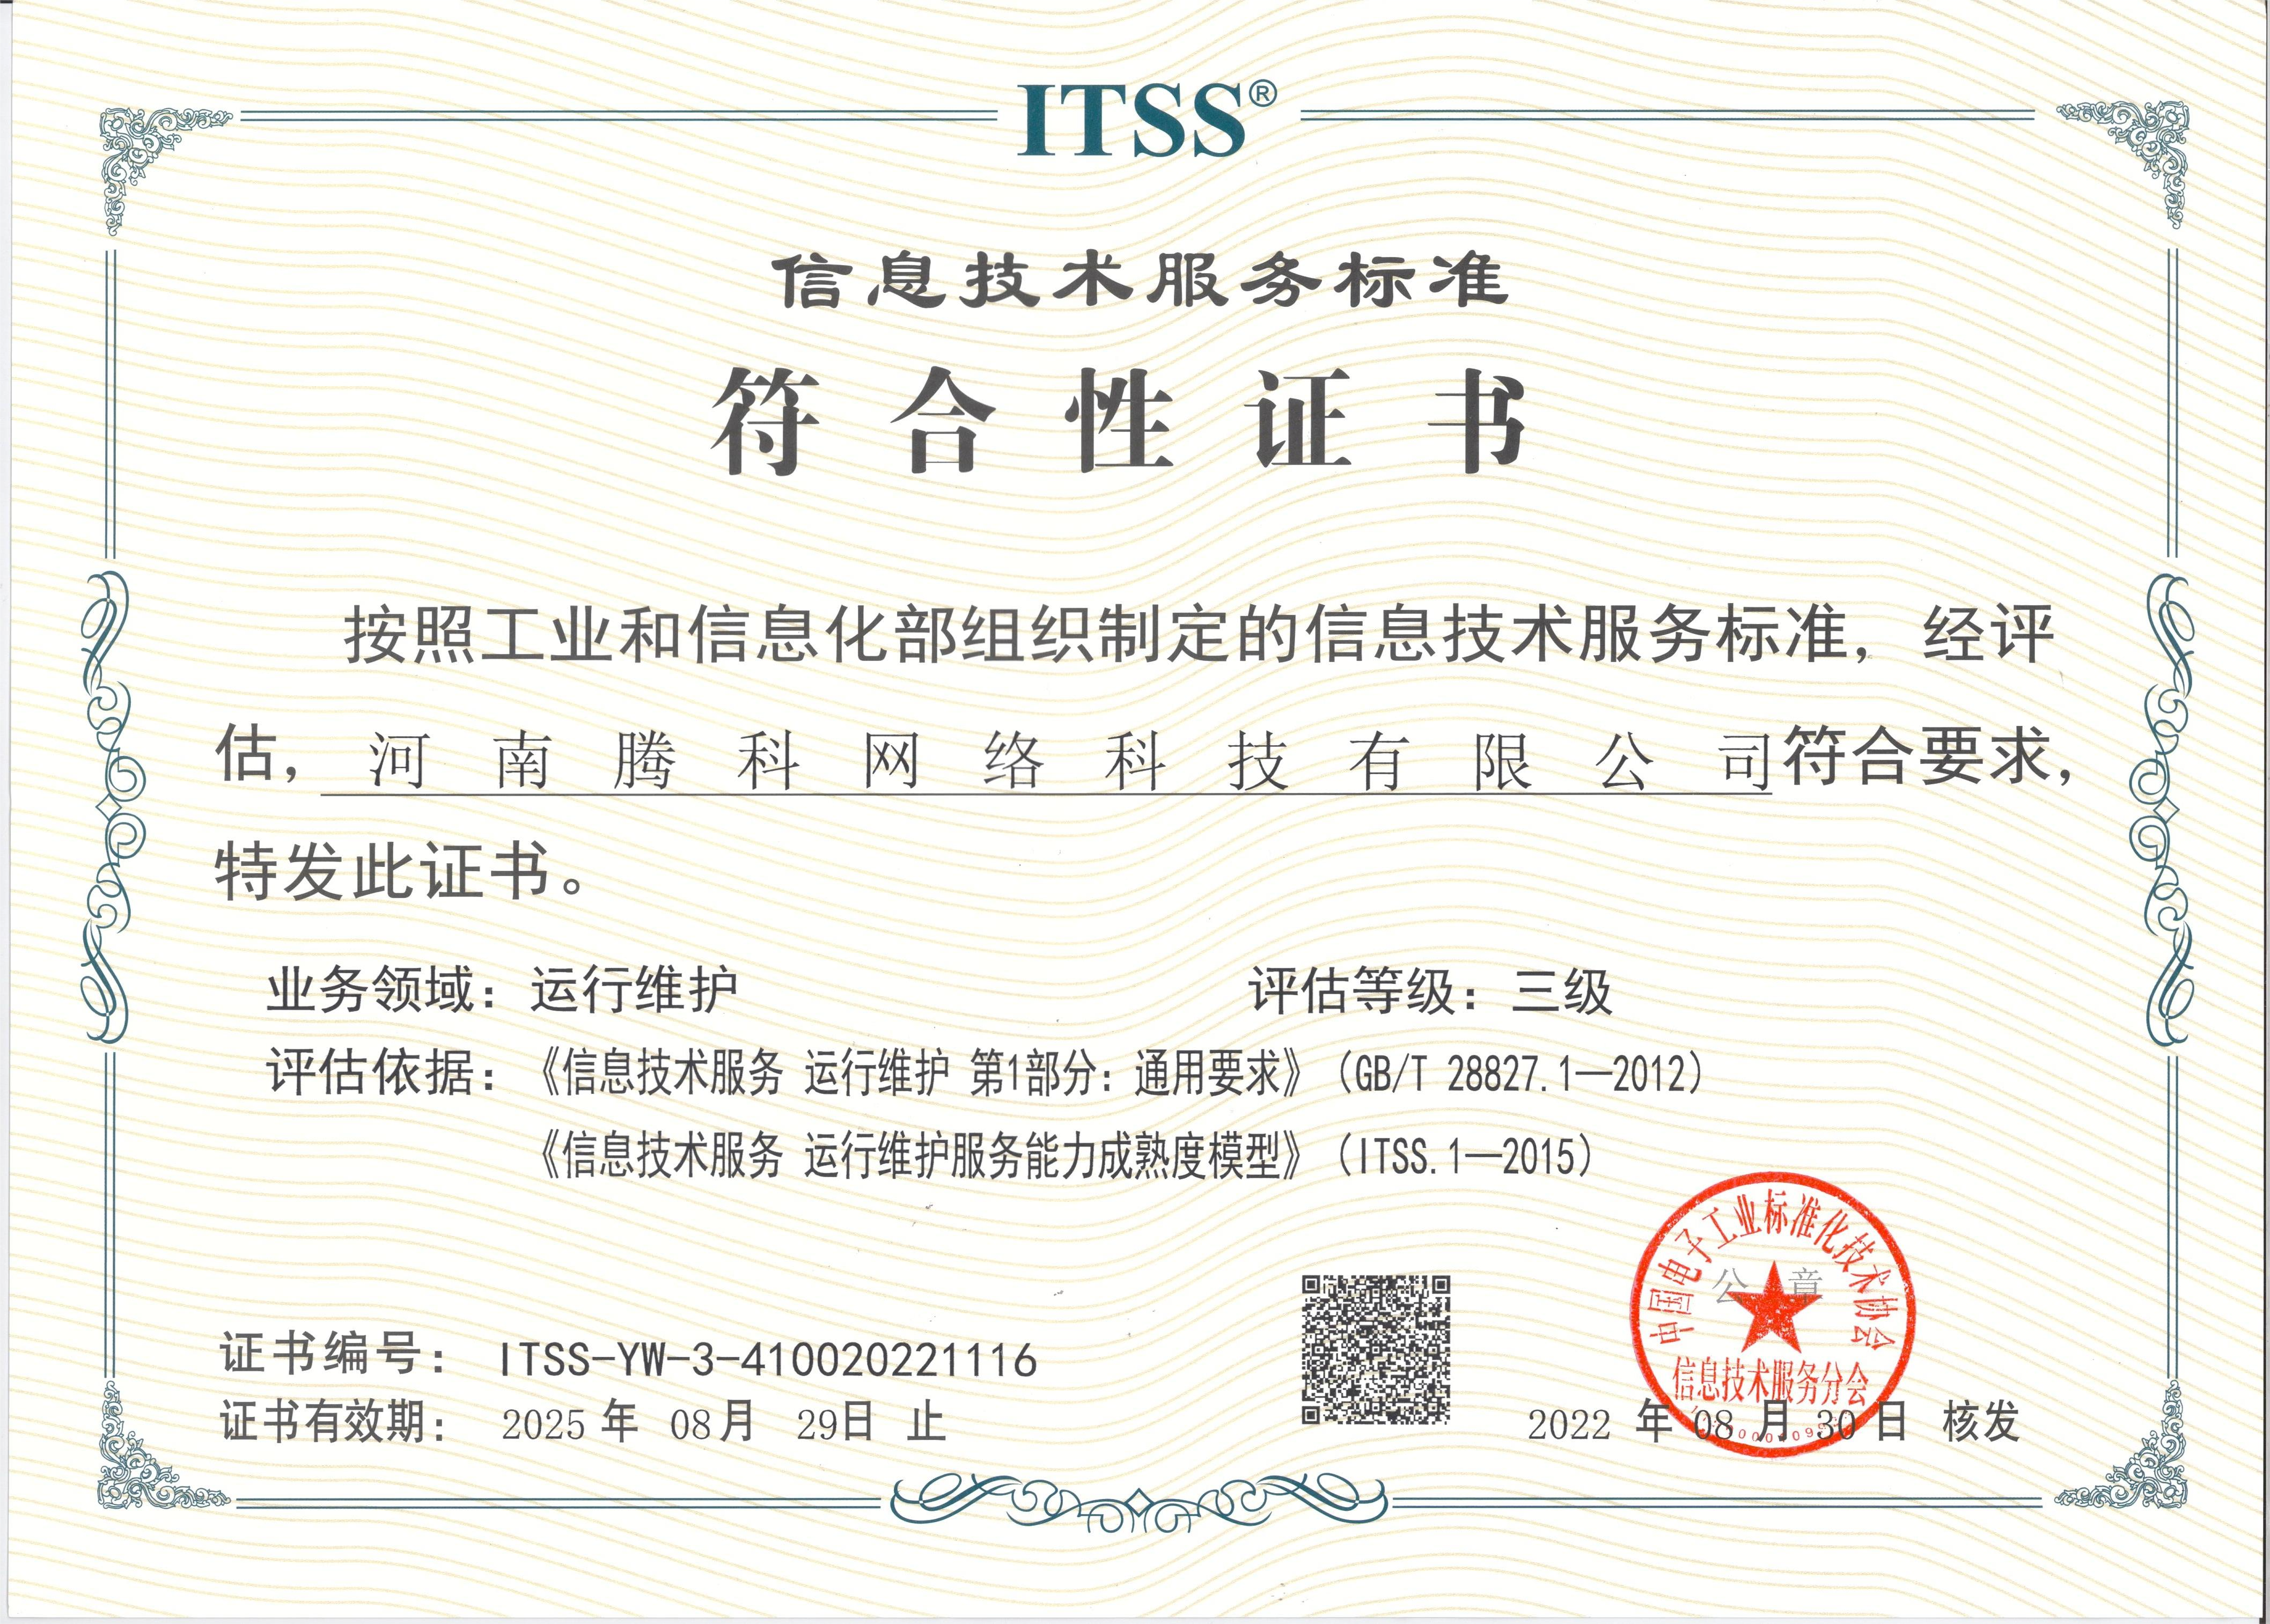 祝賀喜獲ITSS證書